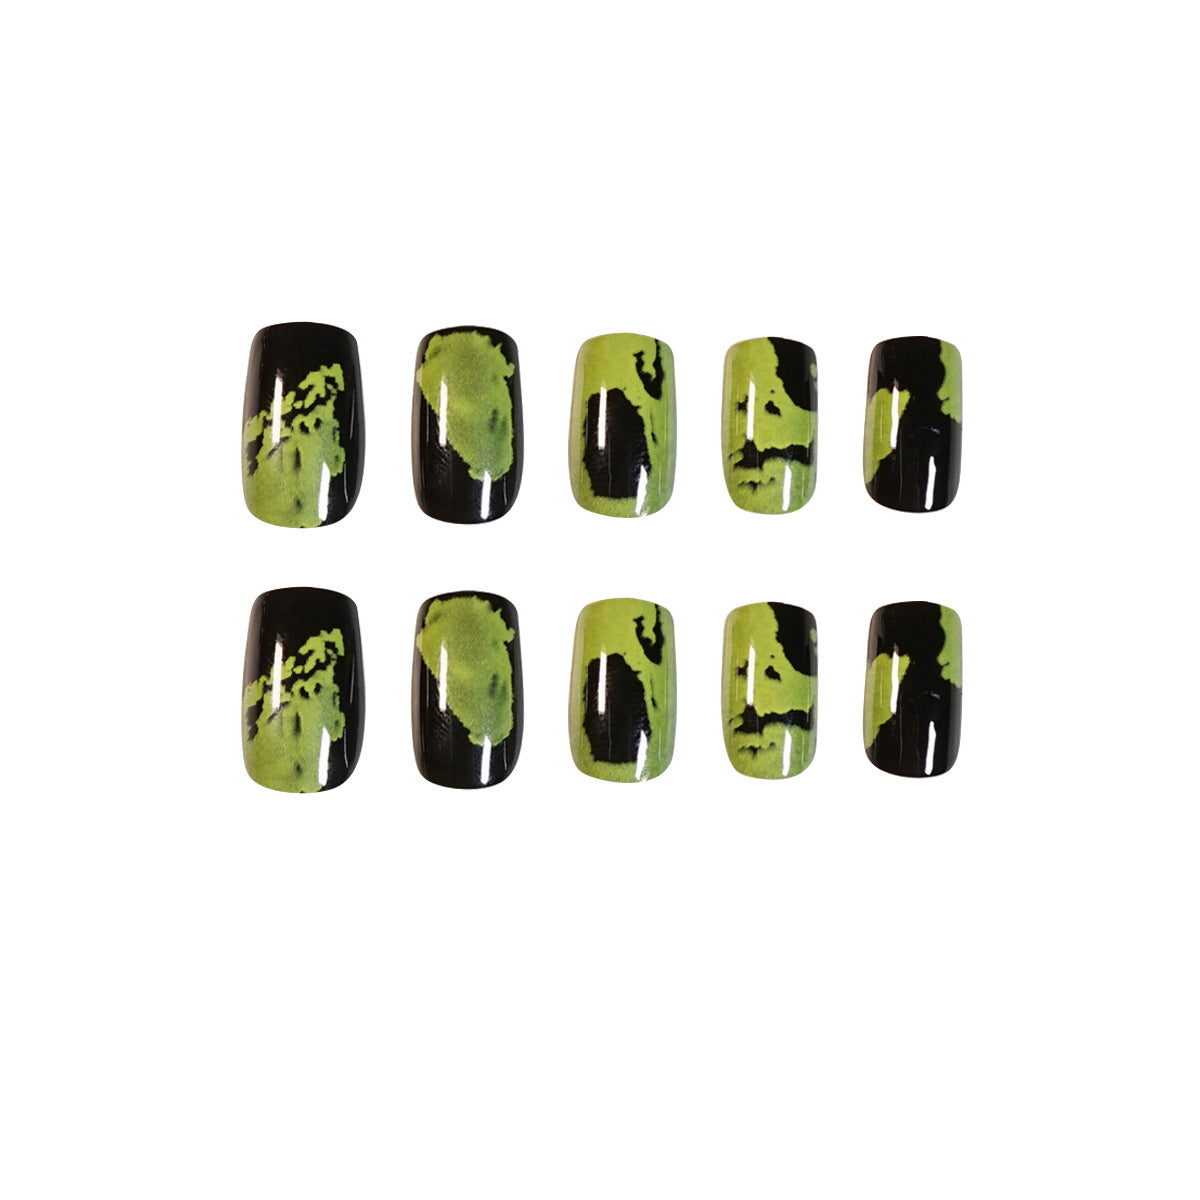 Black and green art graffiti fake nail